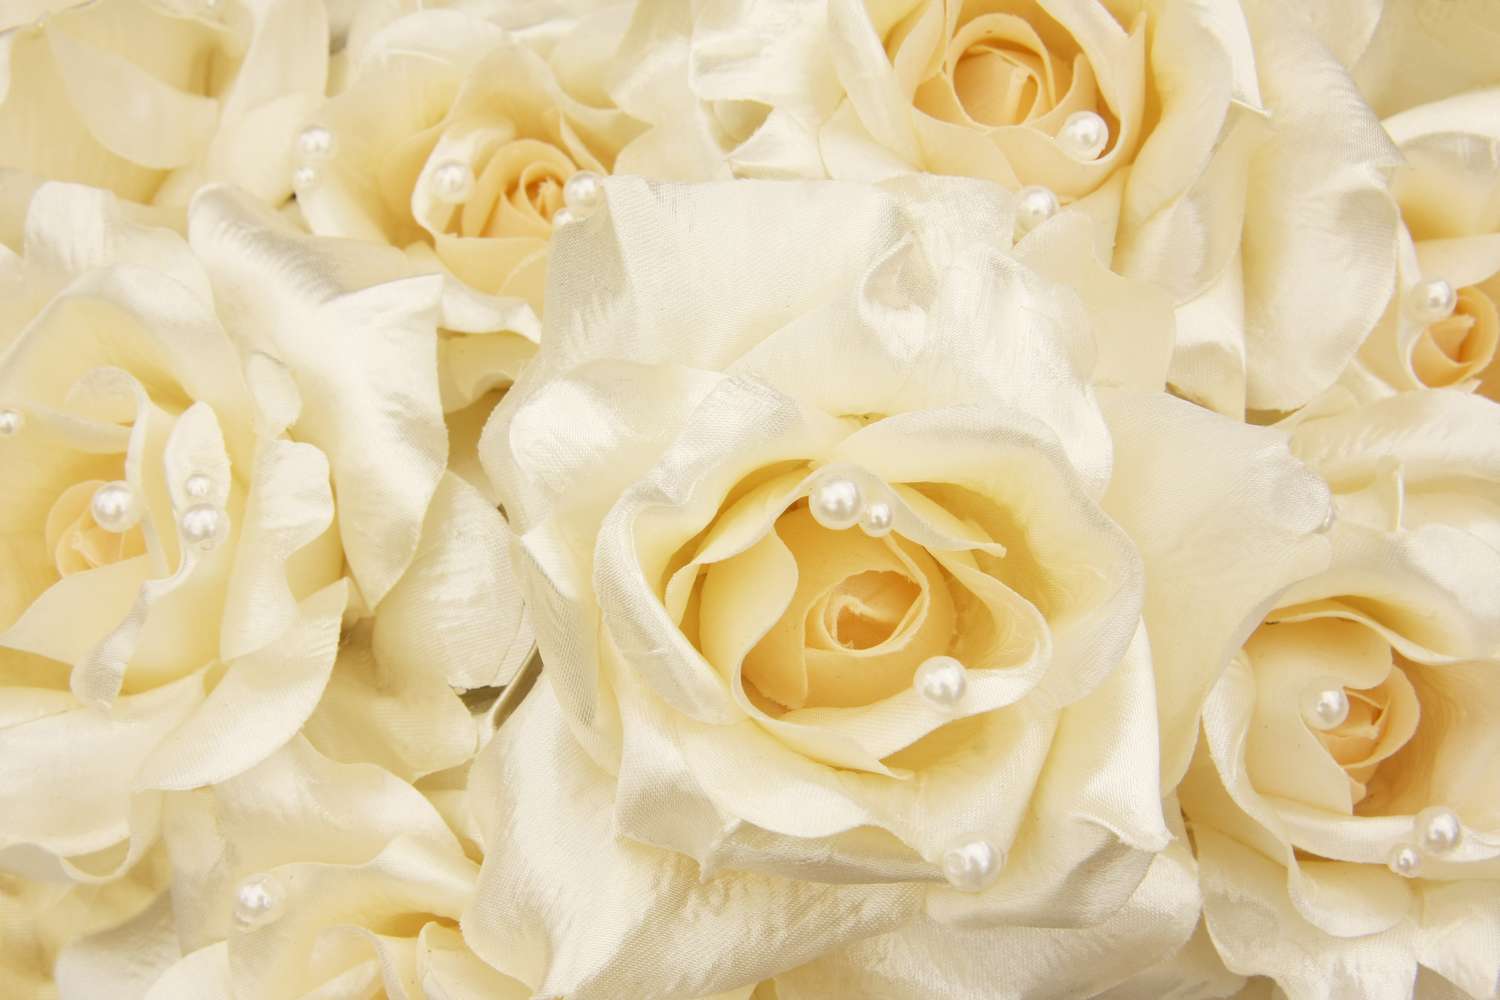 Фотообои с изображением розы с жемчугом для спальни и других помещений